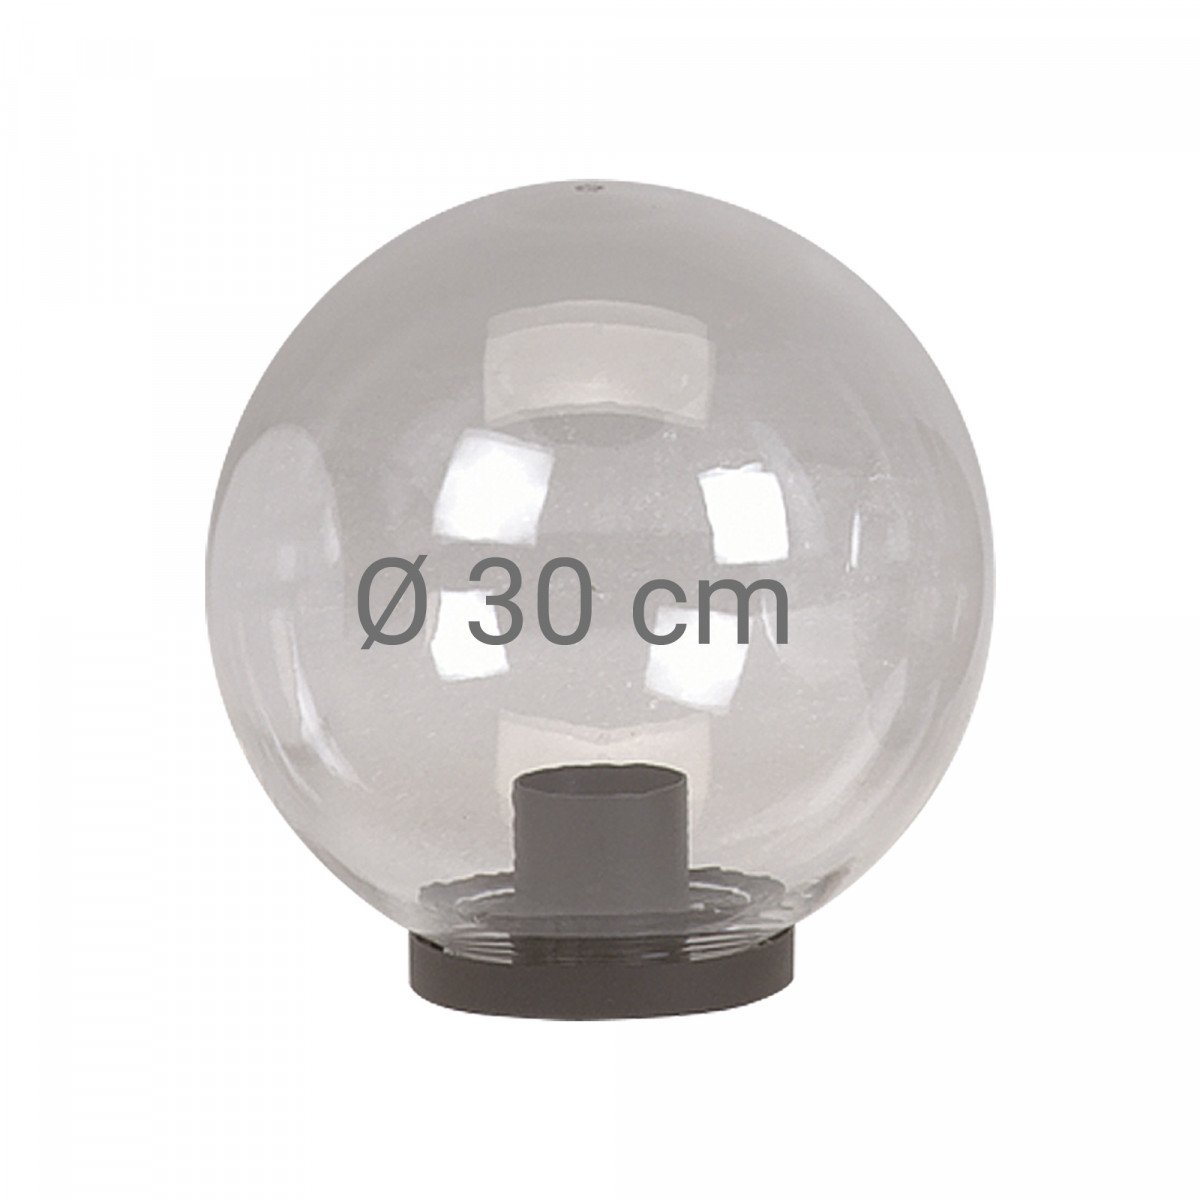 Globe transparent fumé de 30 cm de diamètre avec collerette (3758) de KS Lighting